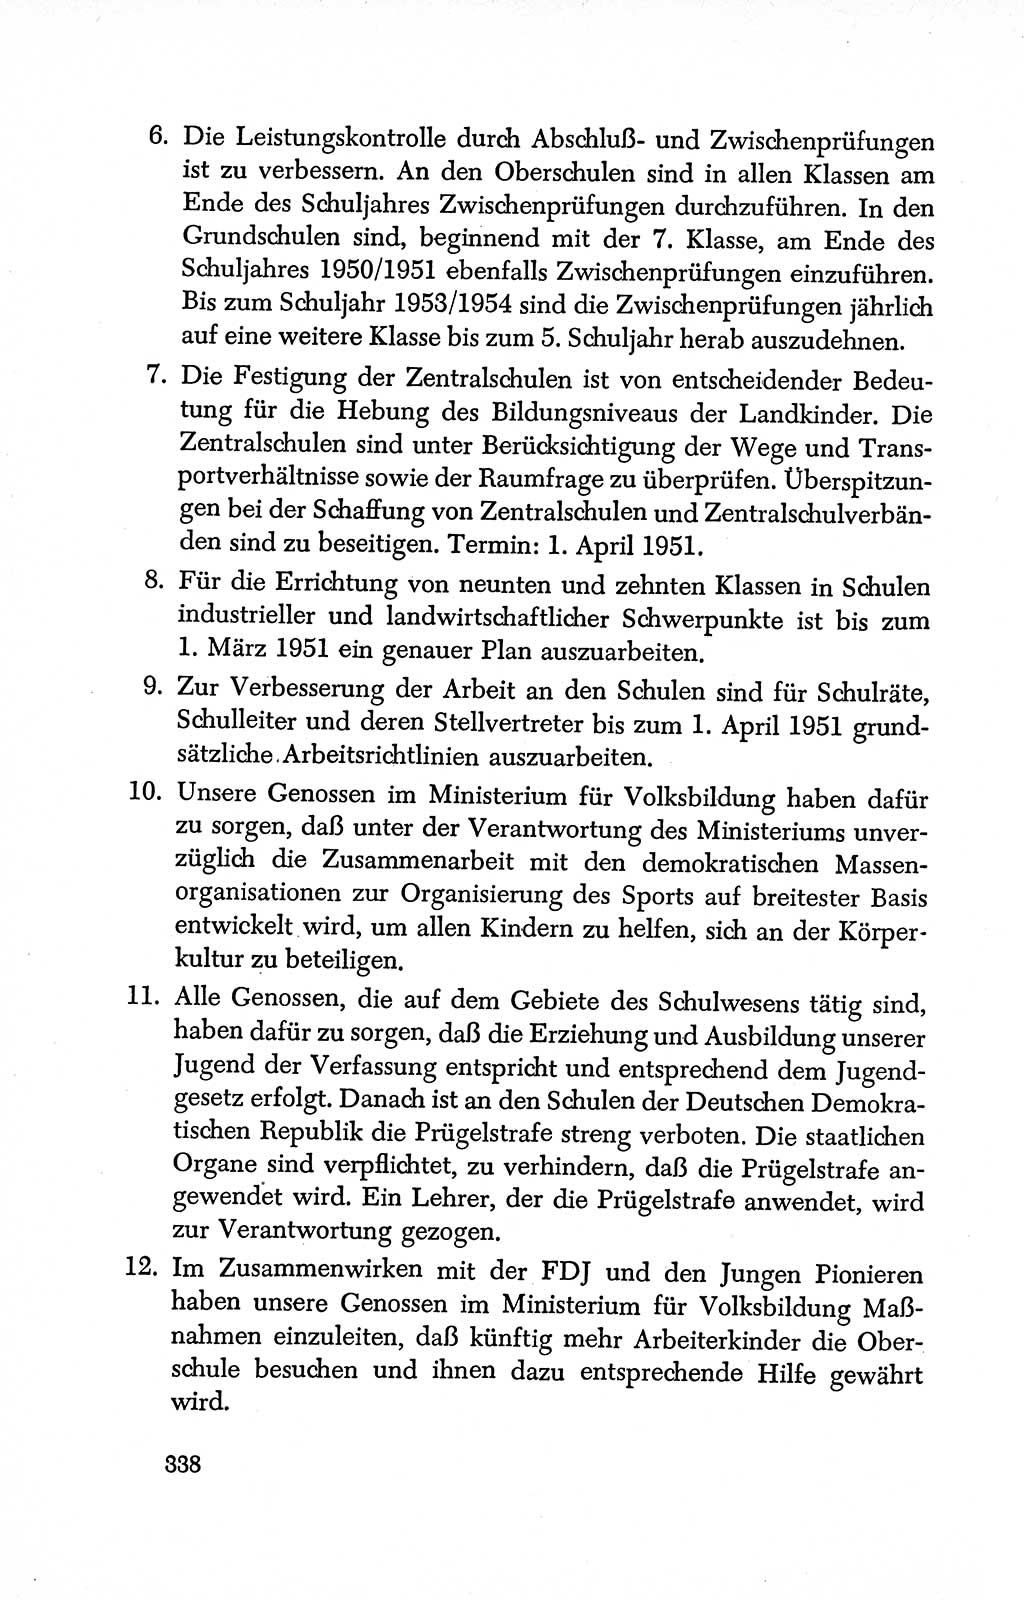 Dokumente der Sozialistischen Einheitspartei Deutschlands (SED) [Deutsche Demokratische Republik (DDR)] 1950-1952, Seite 338 (Dok. SED DDR 1950-1952, S. 338)